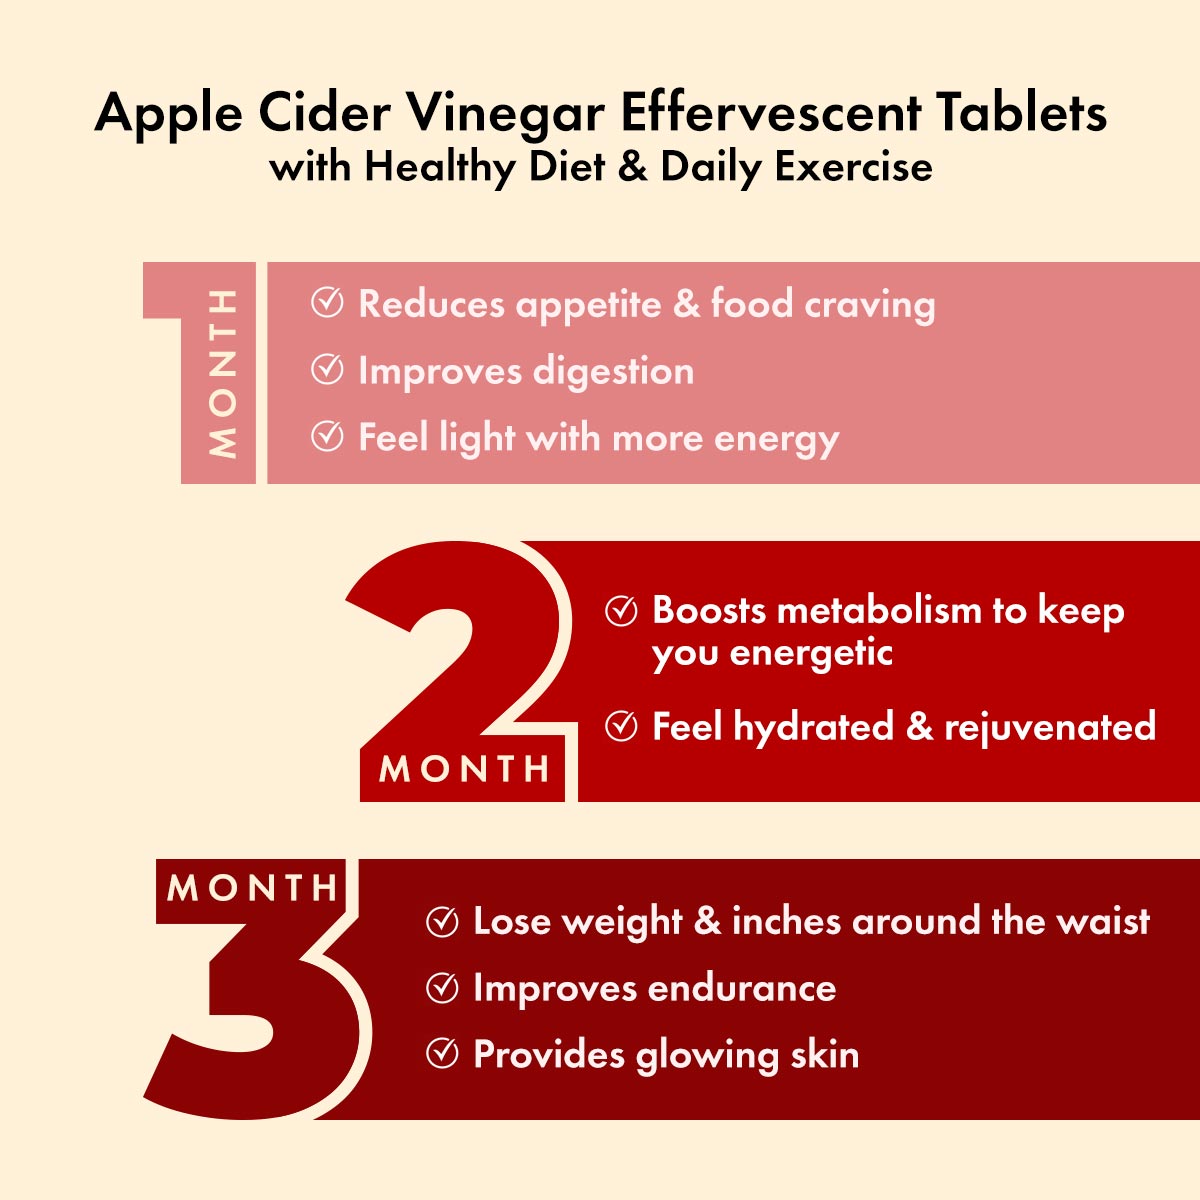 Dr. Vaidya's Apple Cider Vinegar Effervescent Tablets